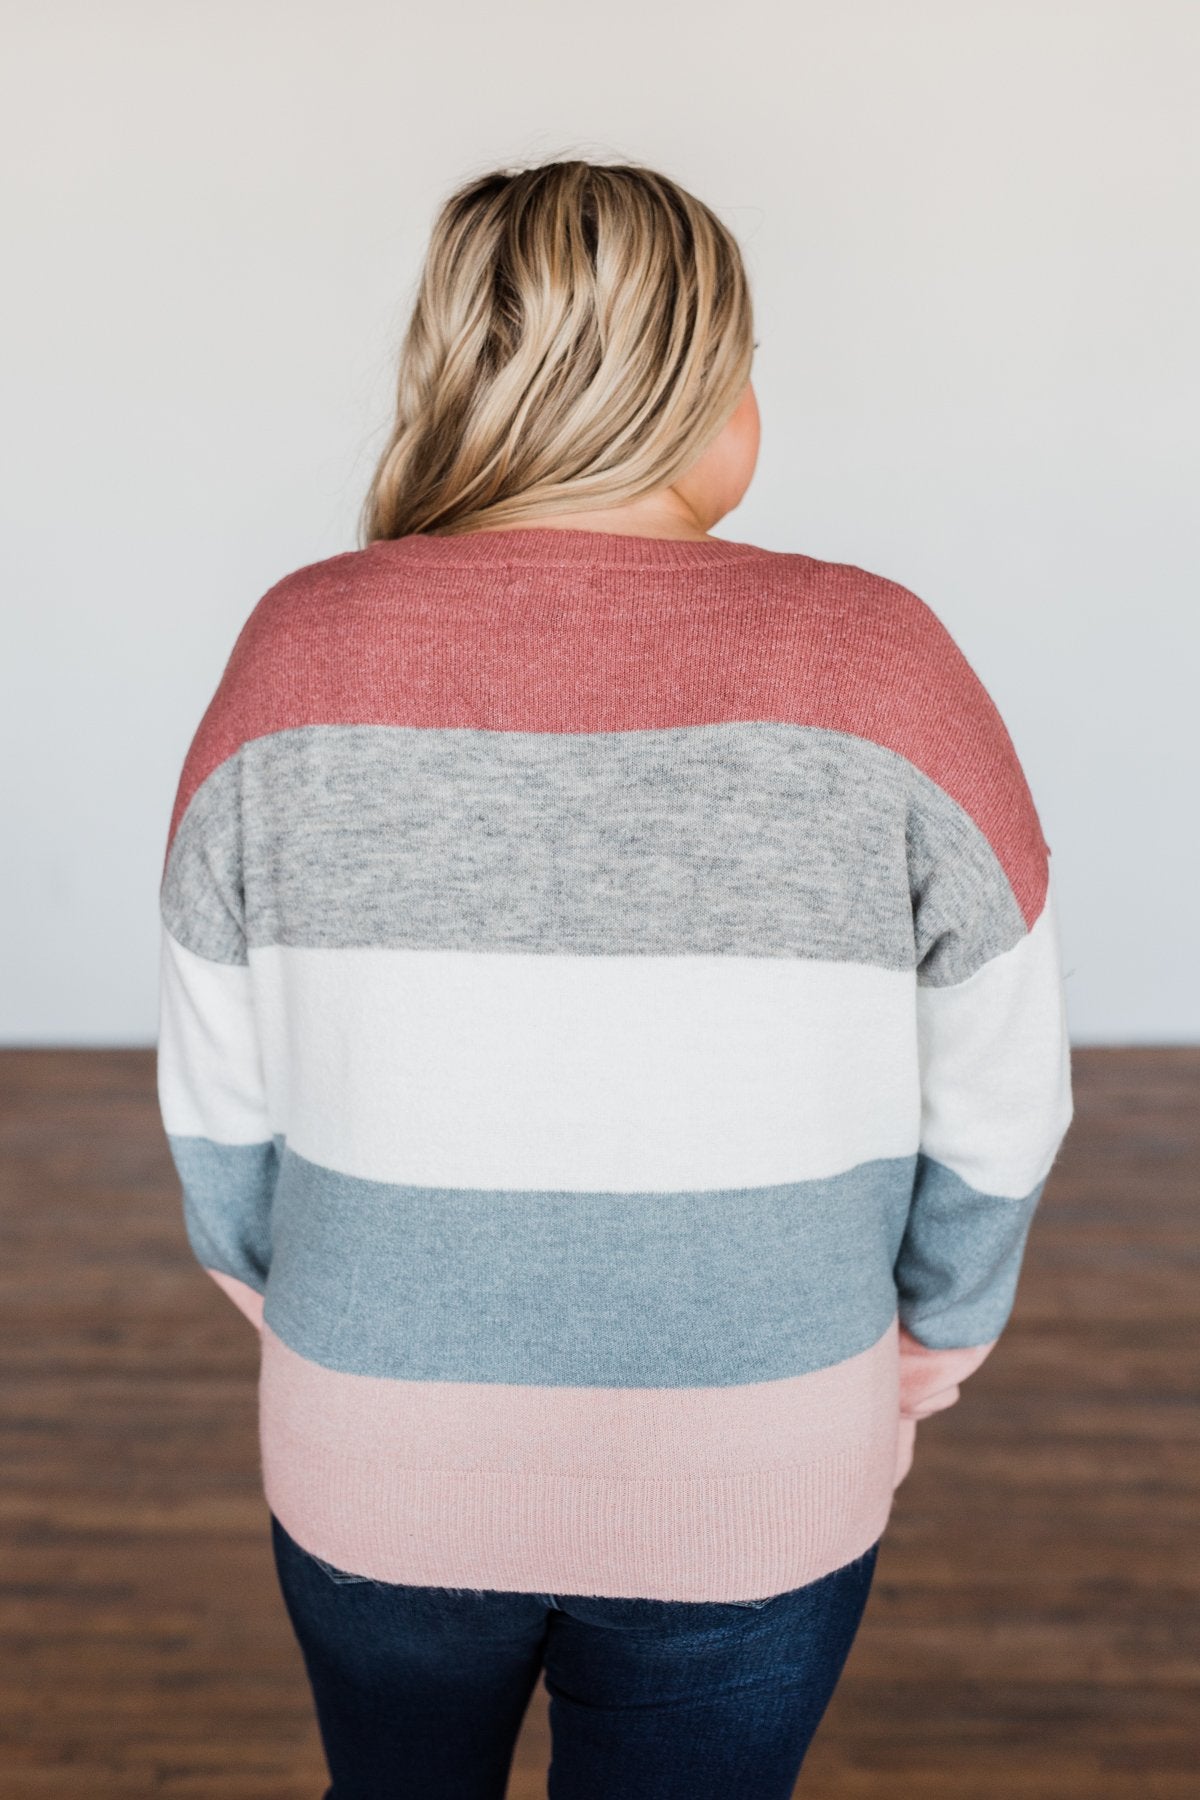 Heart's Desire Color Block Sweater- Mauve, Grey, & Denim Blue